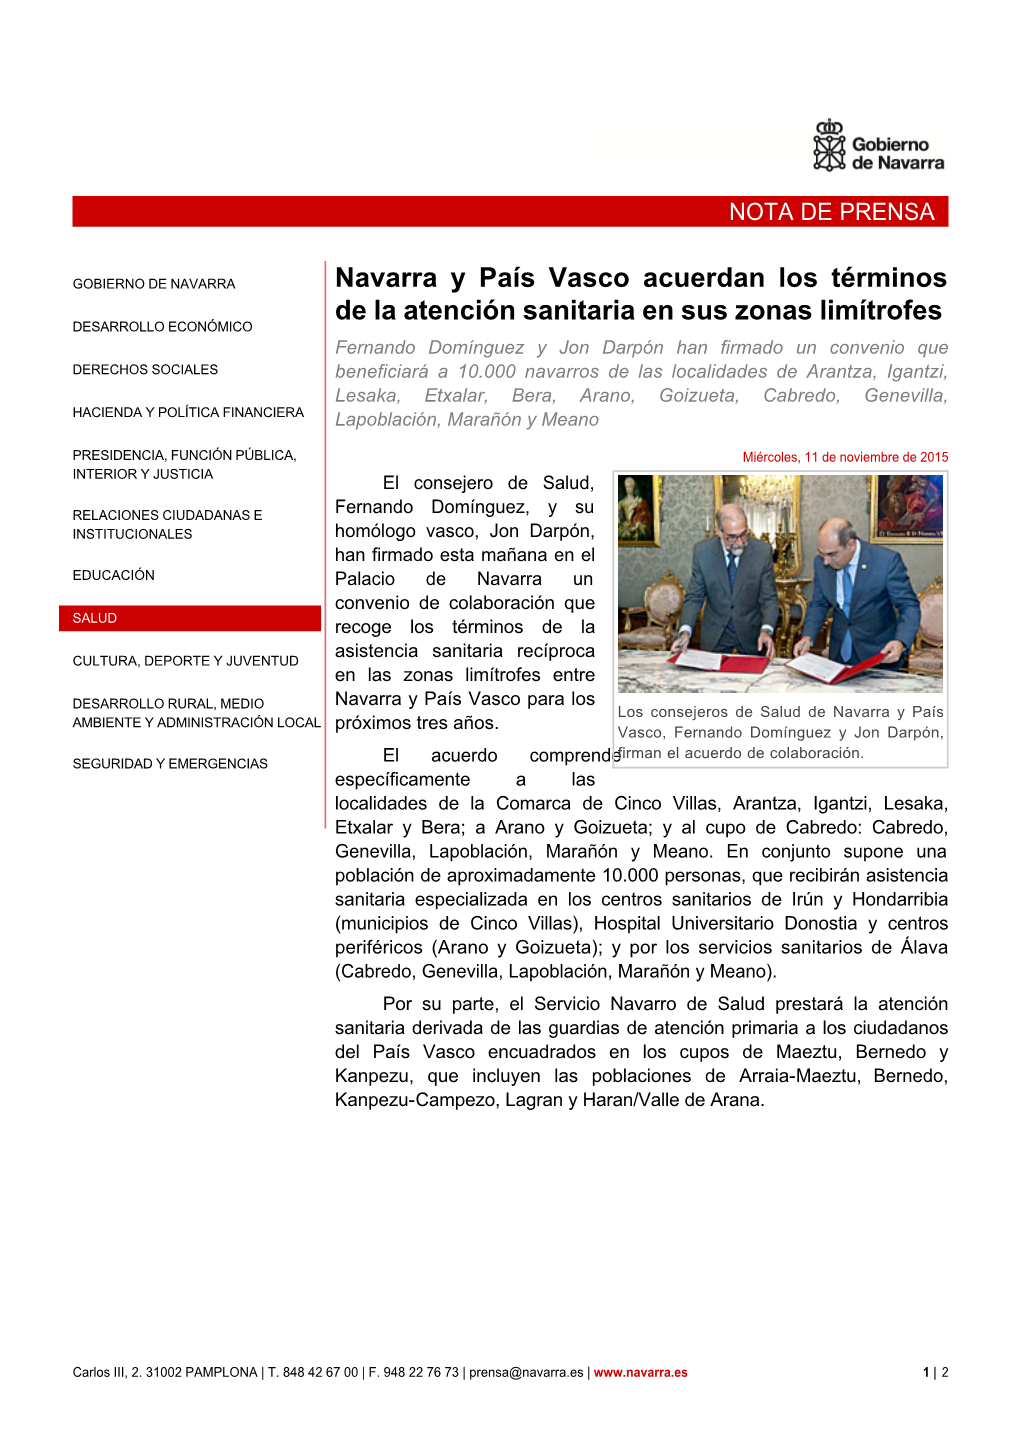 Navarra Y País Vasco Acuerdan Los Términos De La Atención Sanitaria En